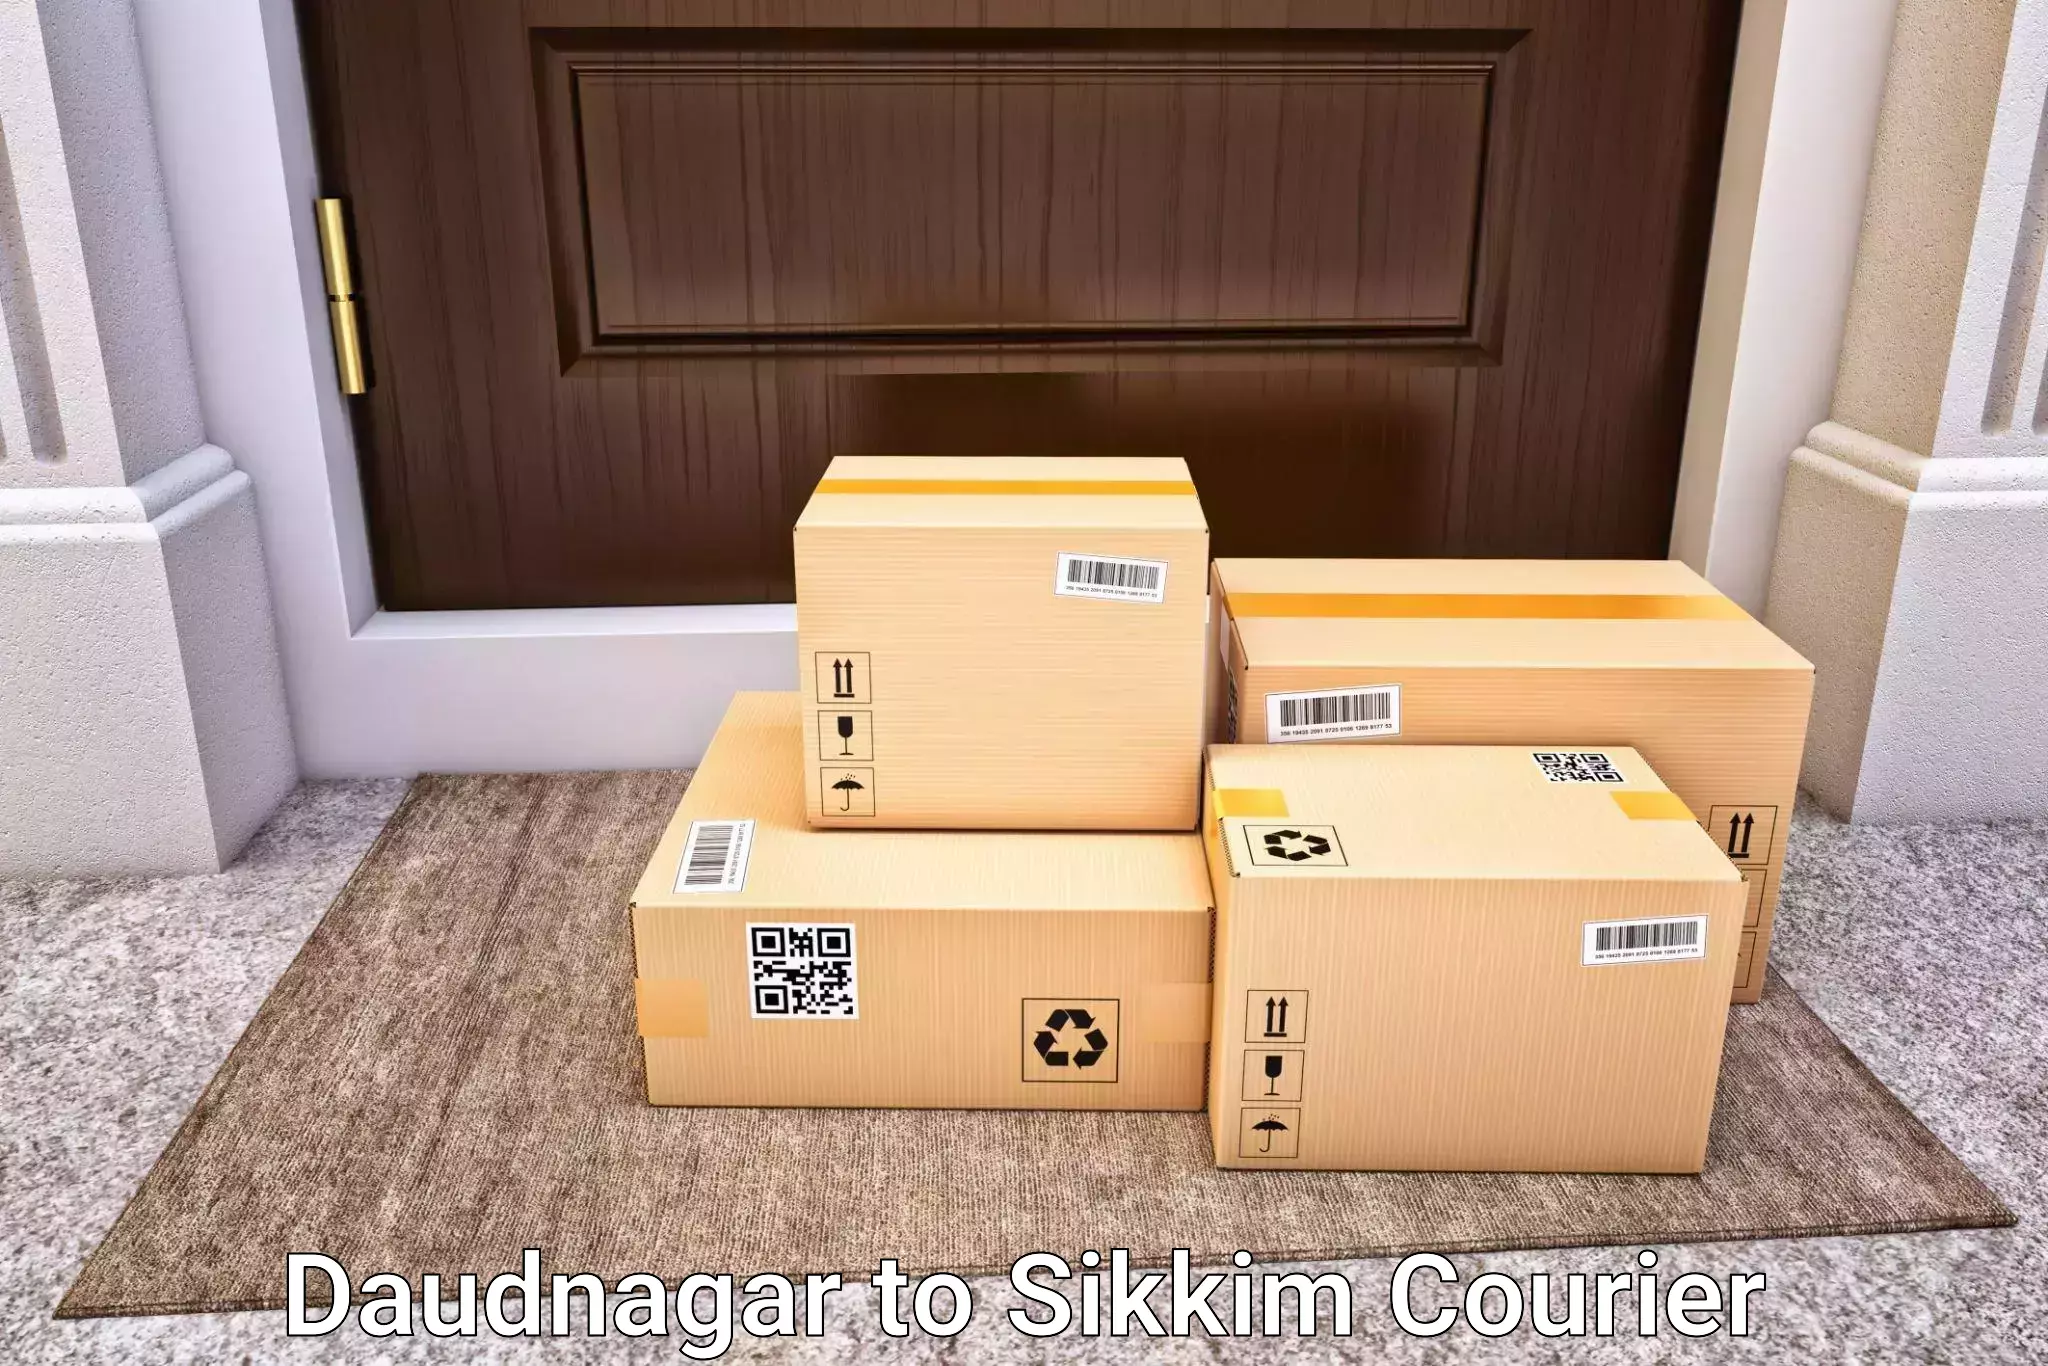 Luggage shipping rates calculator Daudnagar to Rongli